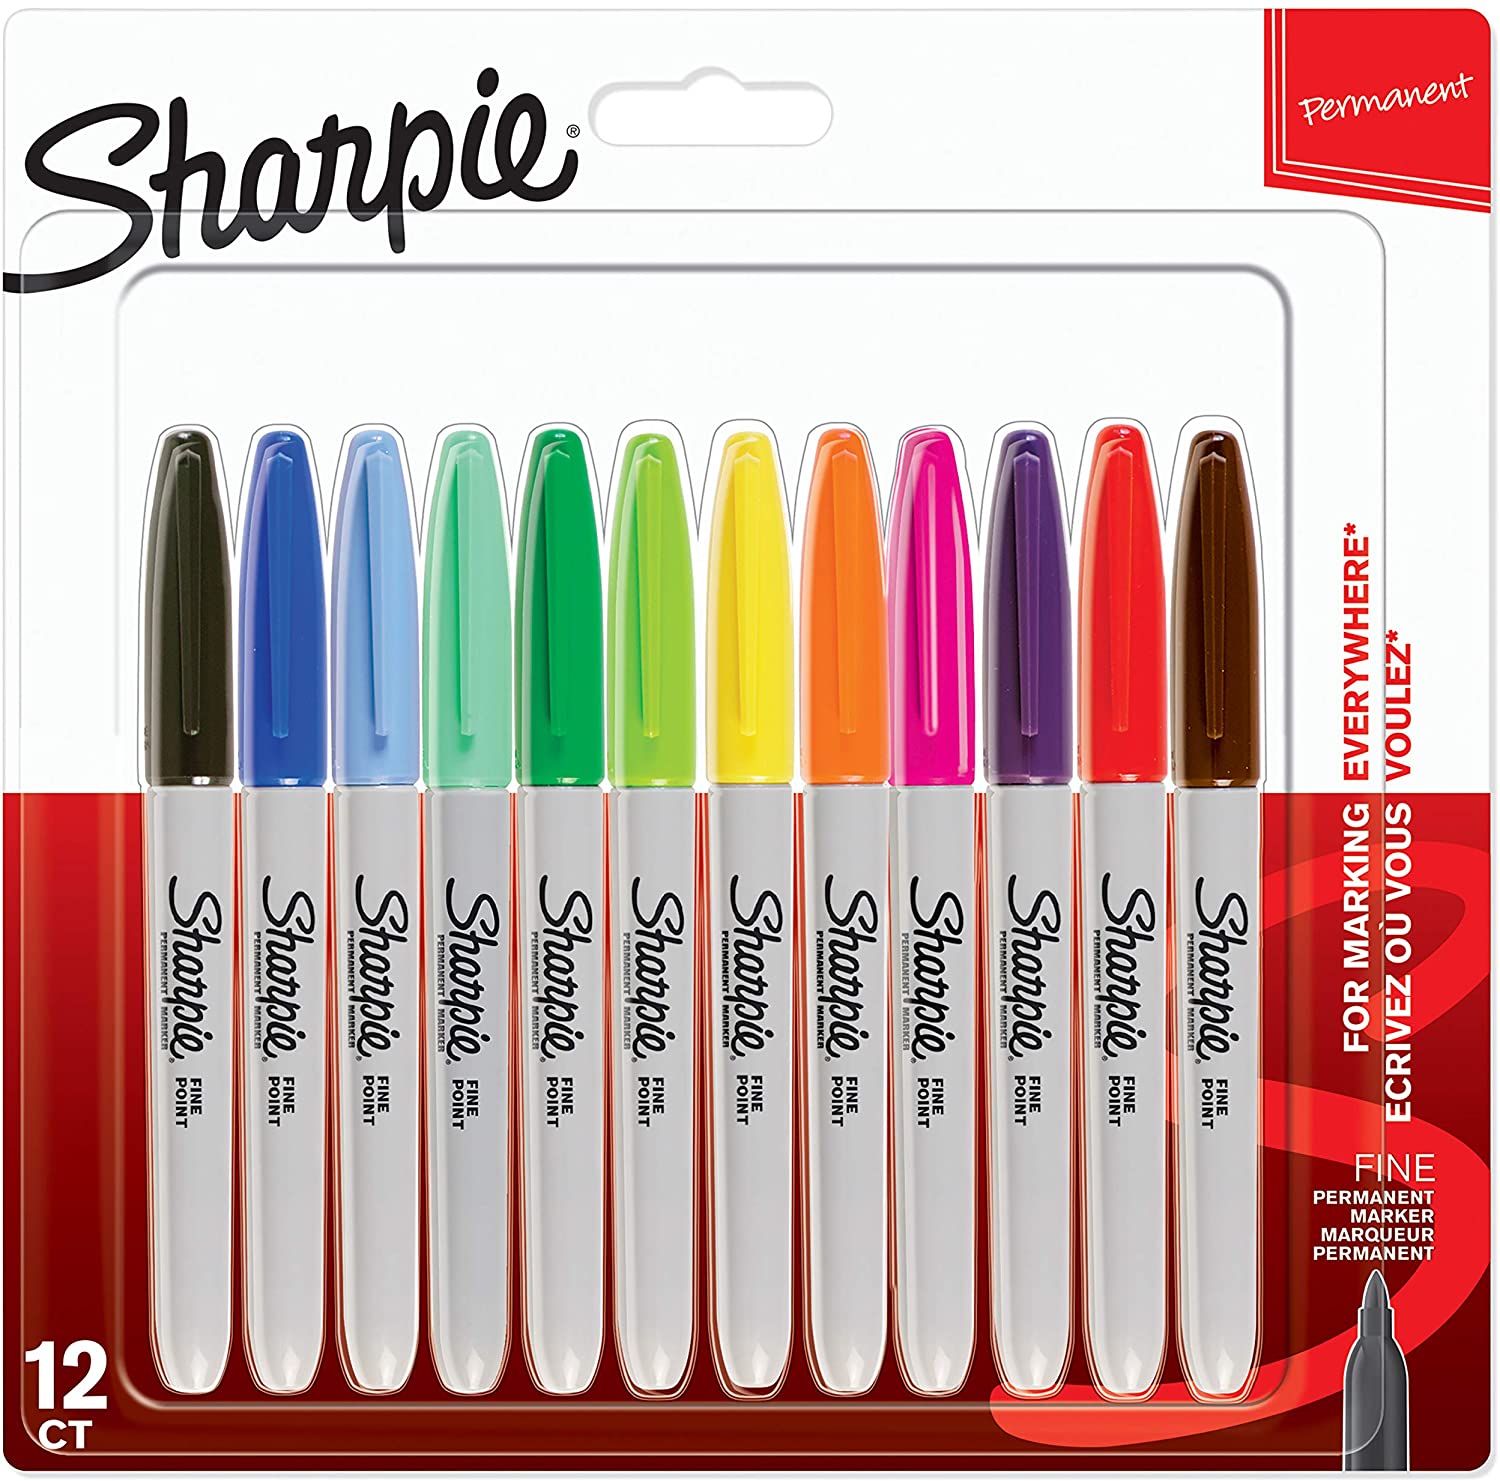 Sharpie Fine Point Porous Point Pen - Blue | 12-Pack | Part #1742664